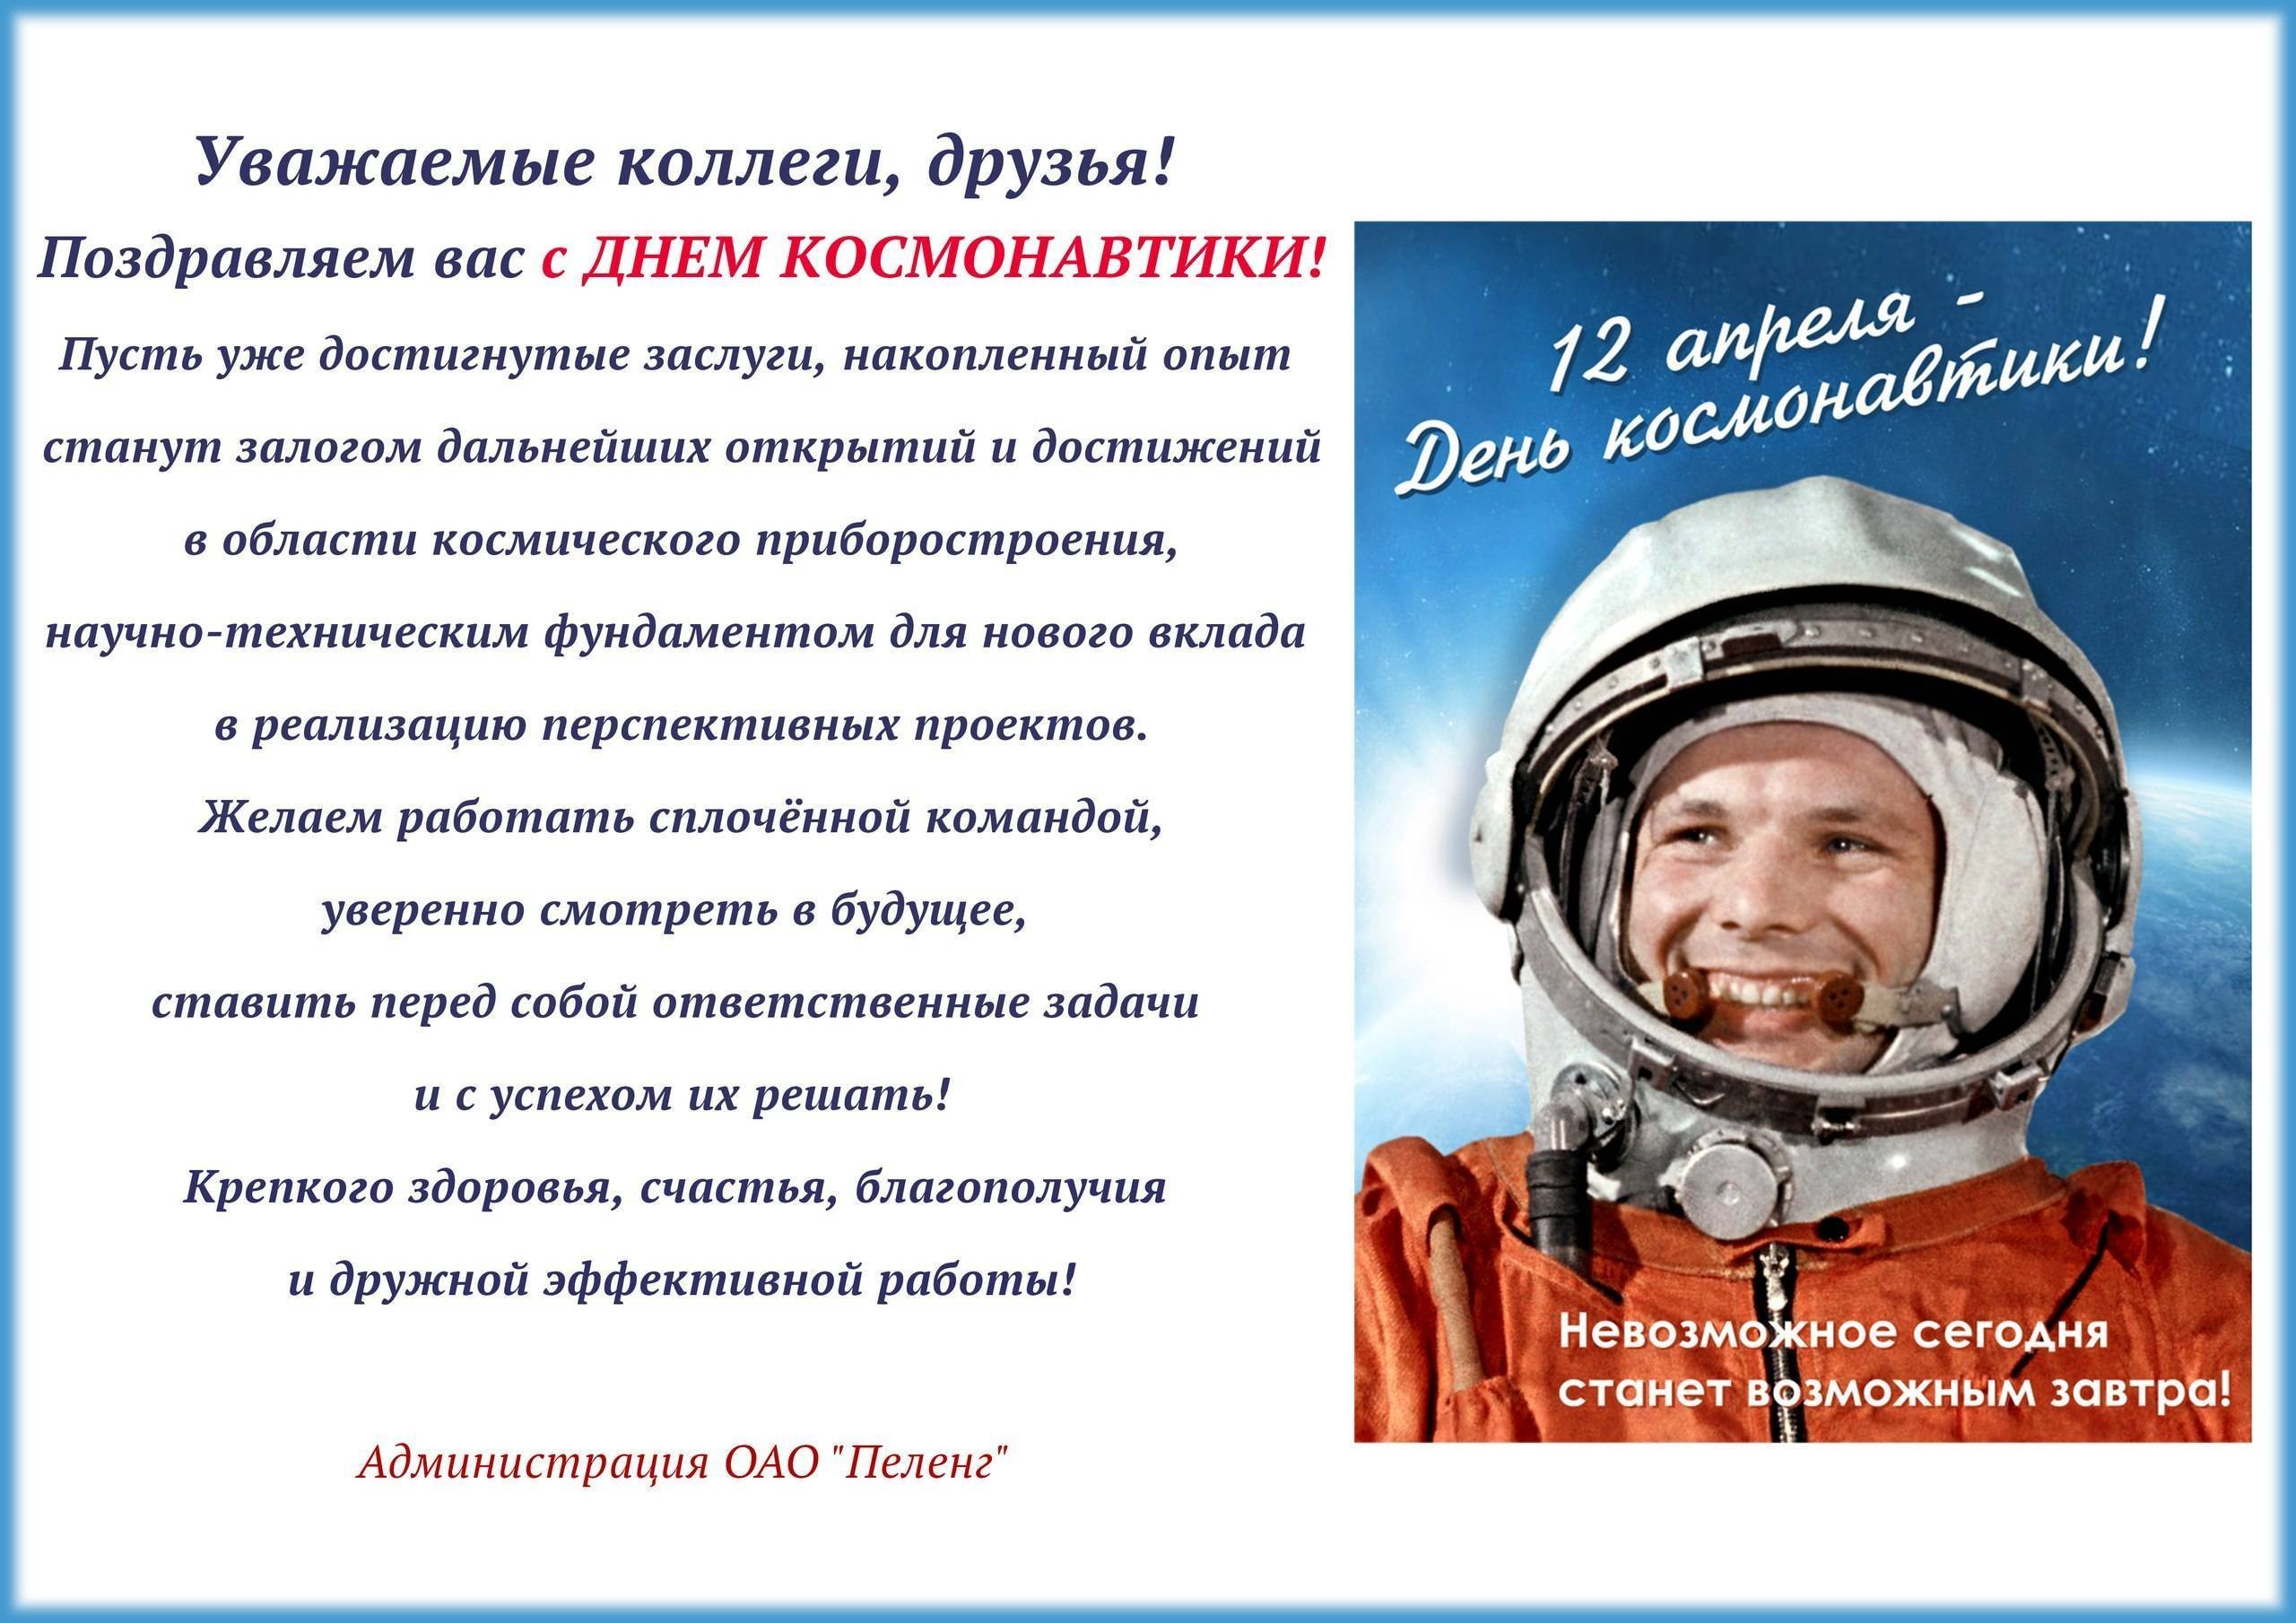 Объявление на день космонавтики. С днем космонавтики поздравление. С днем космонавтики пожелания. С днем космонавтики открытки. Поздравление с днем космонавтики в прозе.